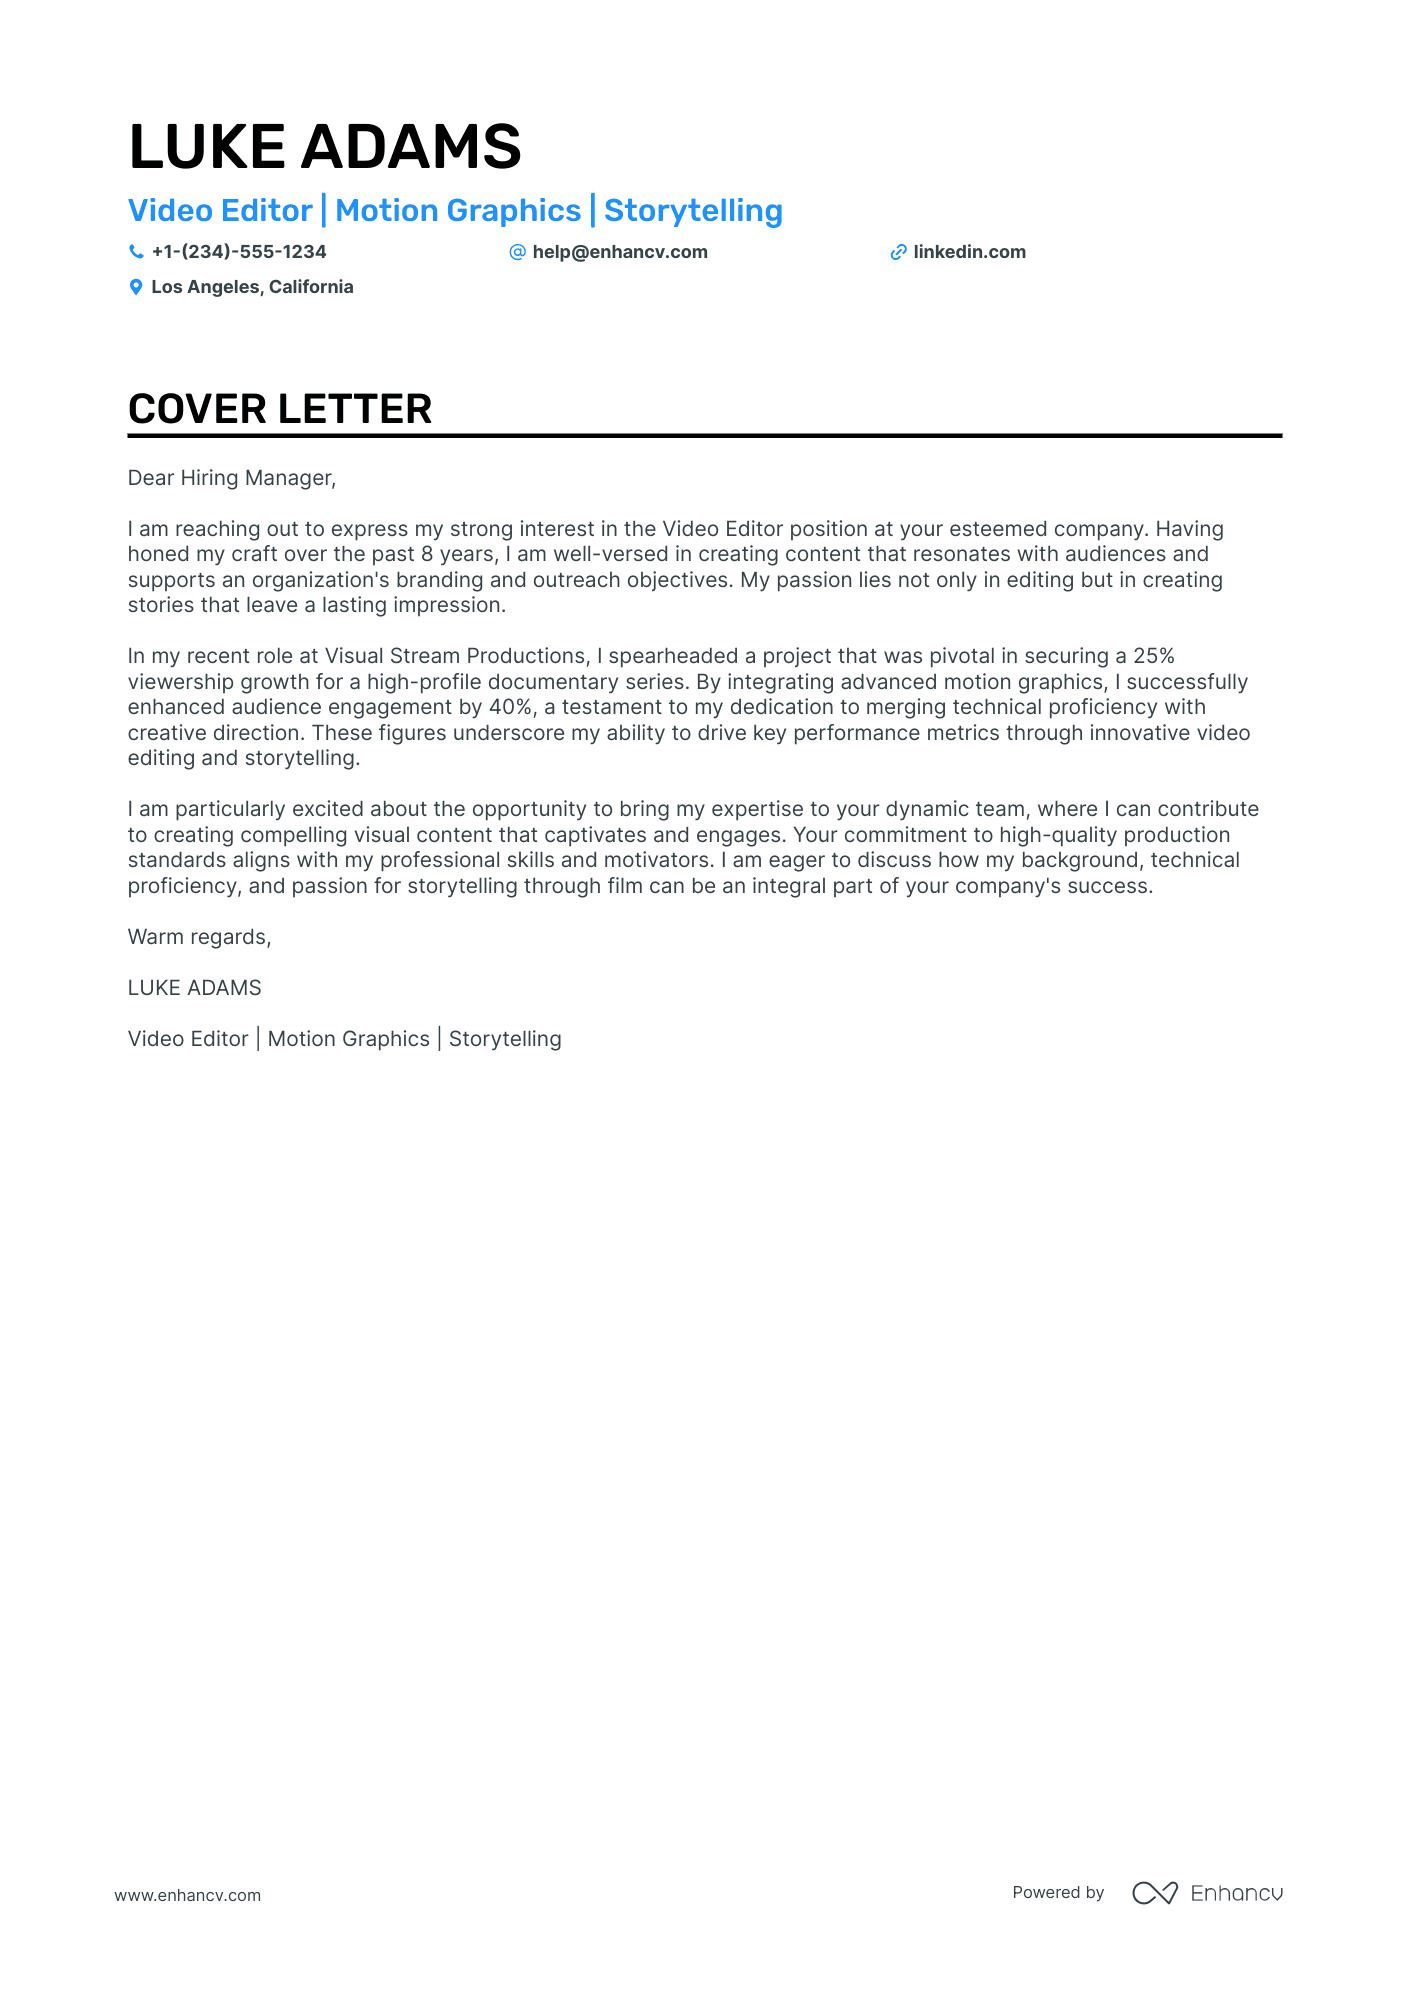 jobadder video cover letter